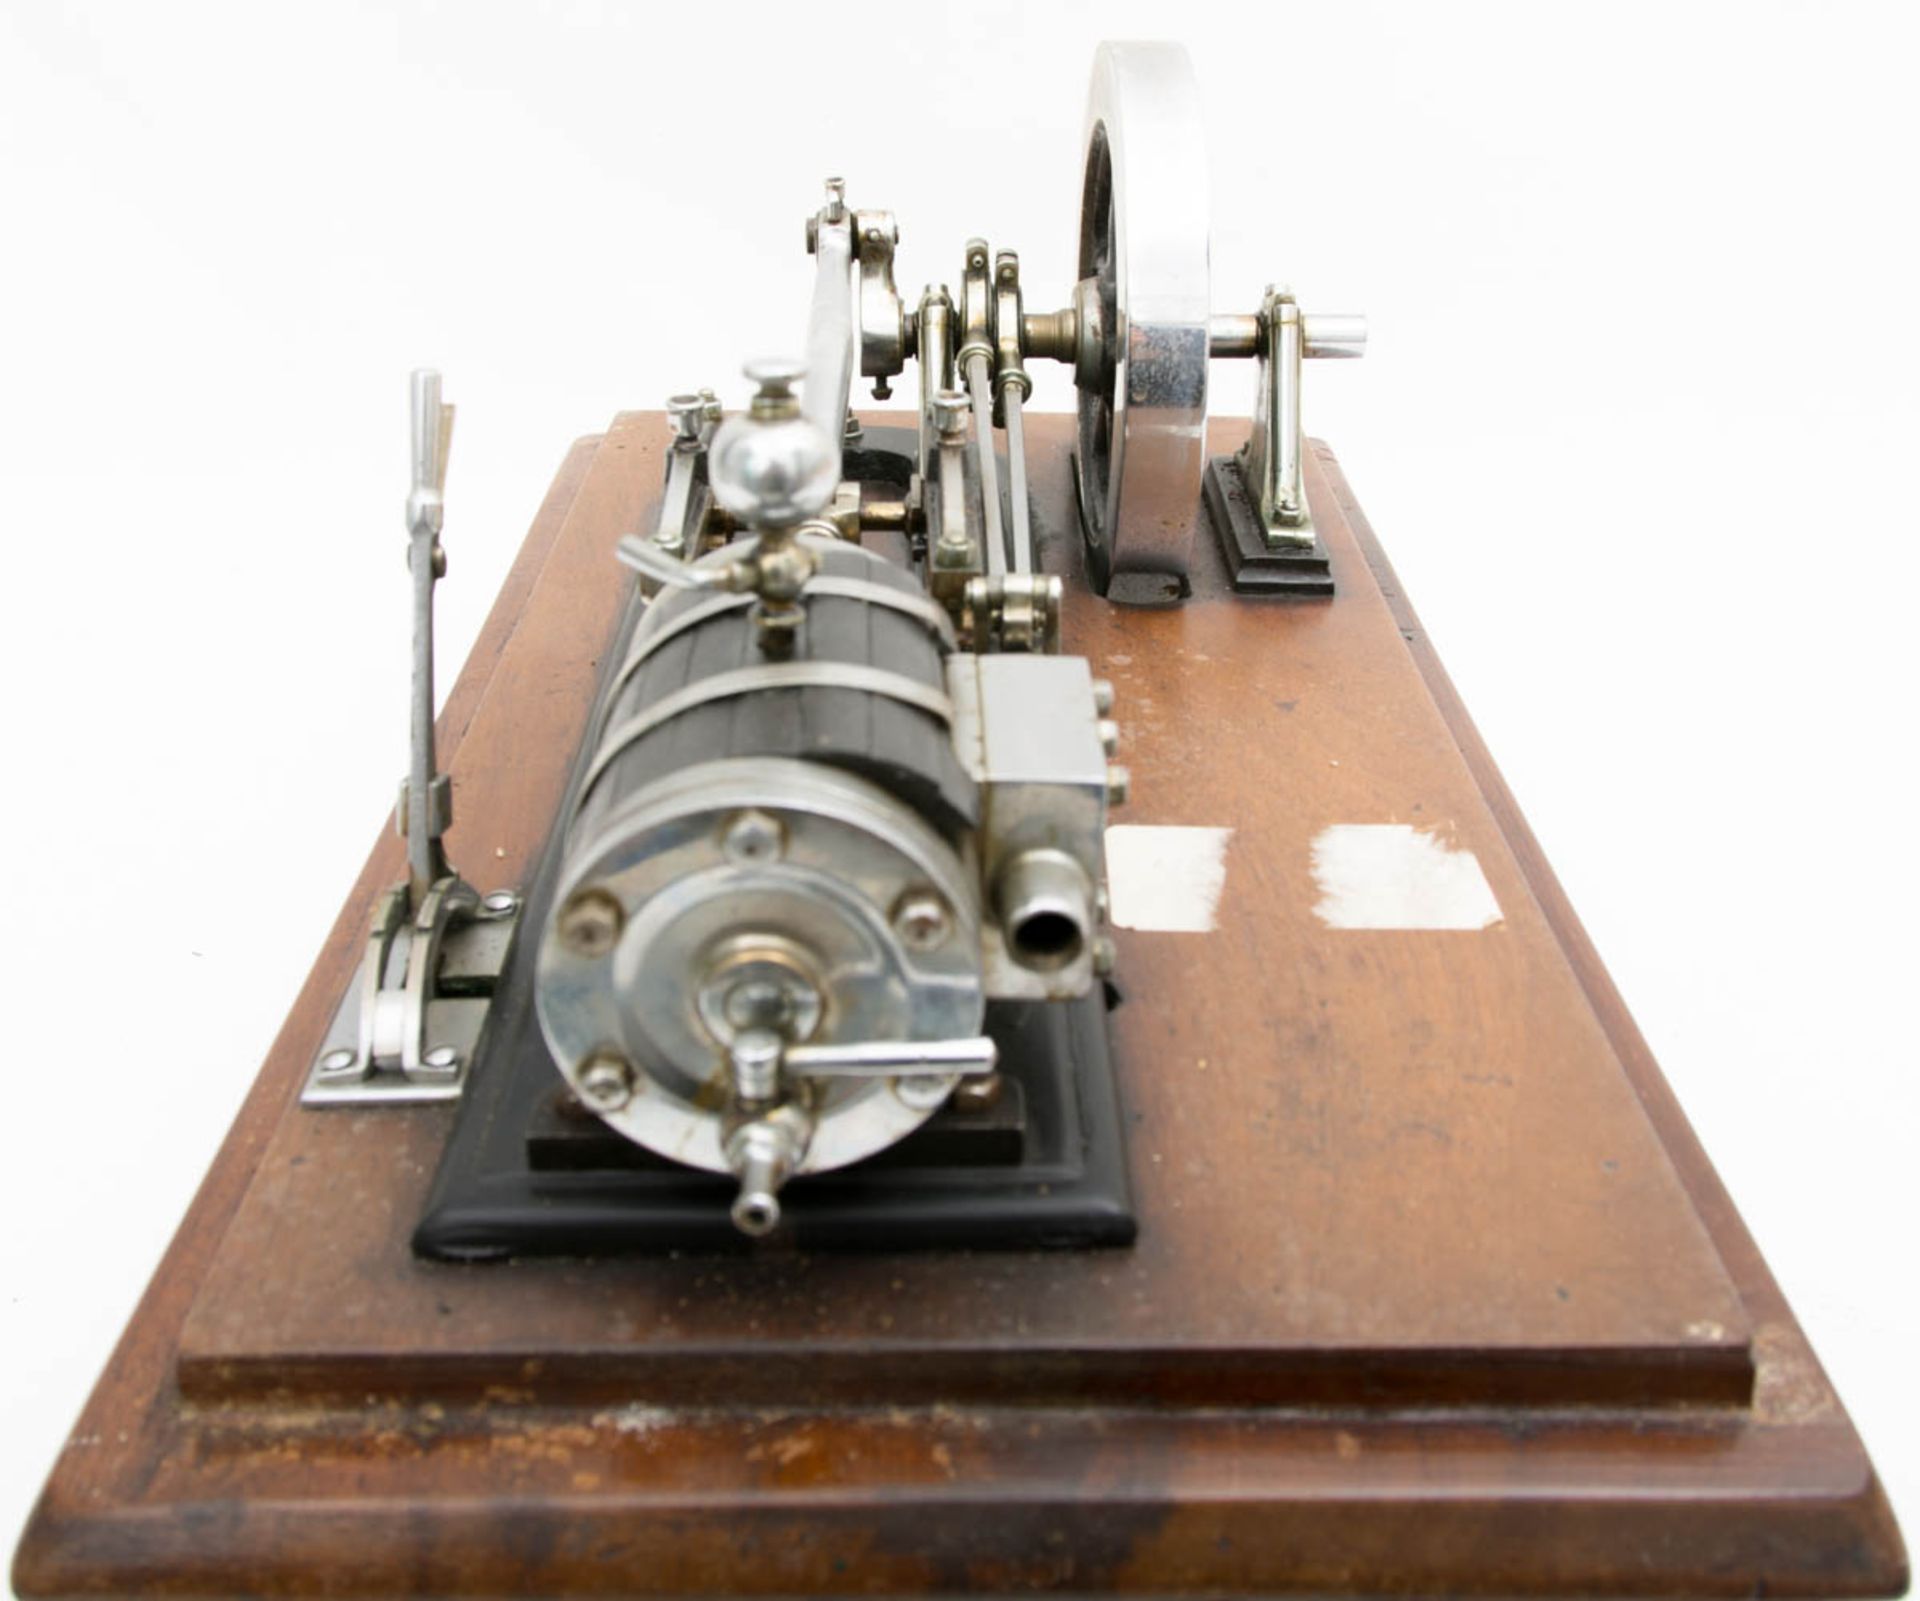 Modell Dampfmaschine in Holzkasten mit Glasscheiben.Kleine Modell-Dampfmaschine in Hol - Image 5 of 7